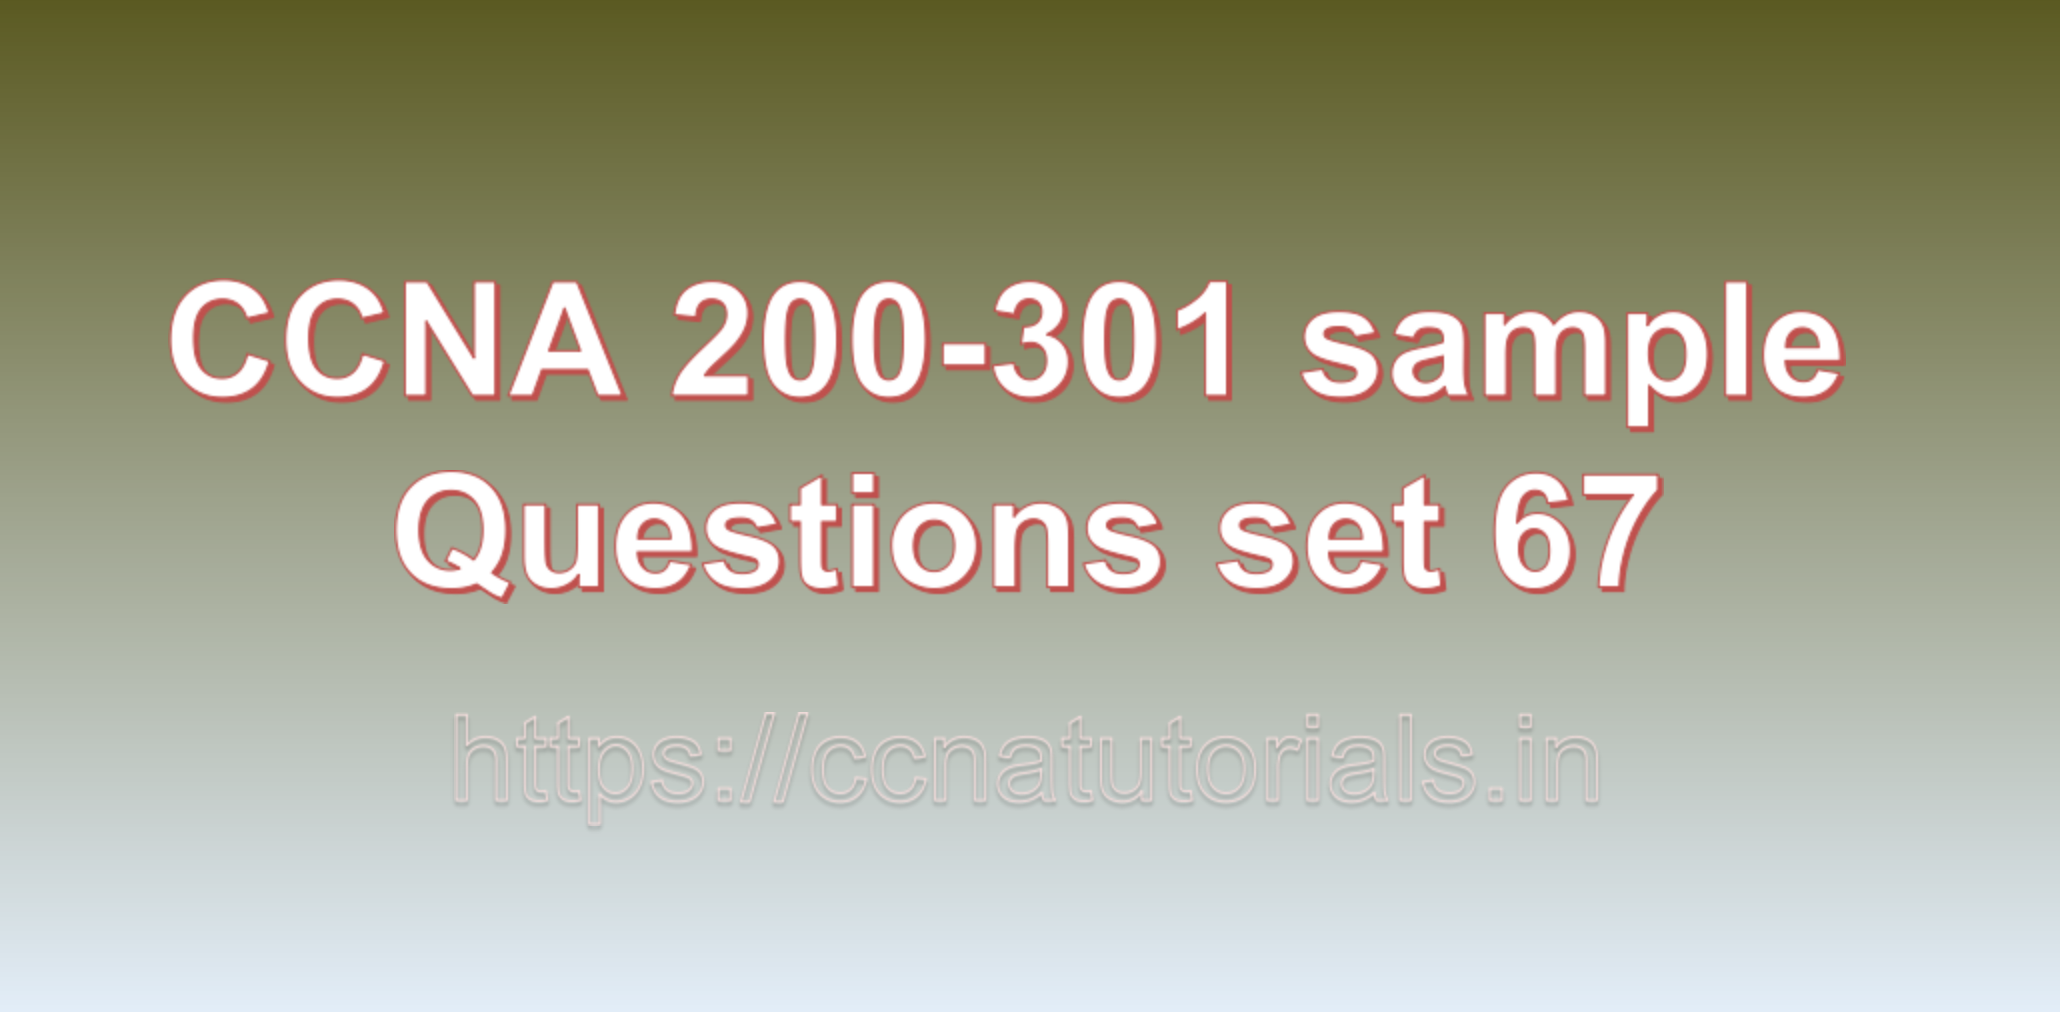 ccna sample questions set 67, ccna tutorials, CCNA Exam, ccna